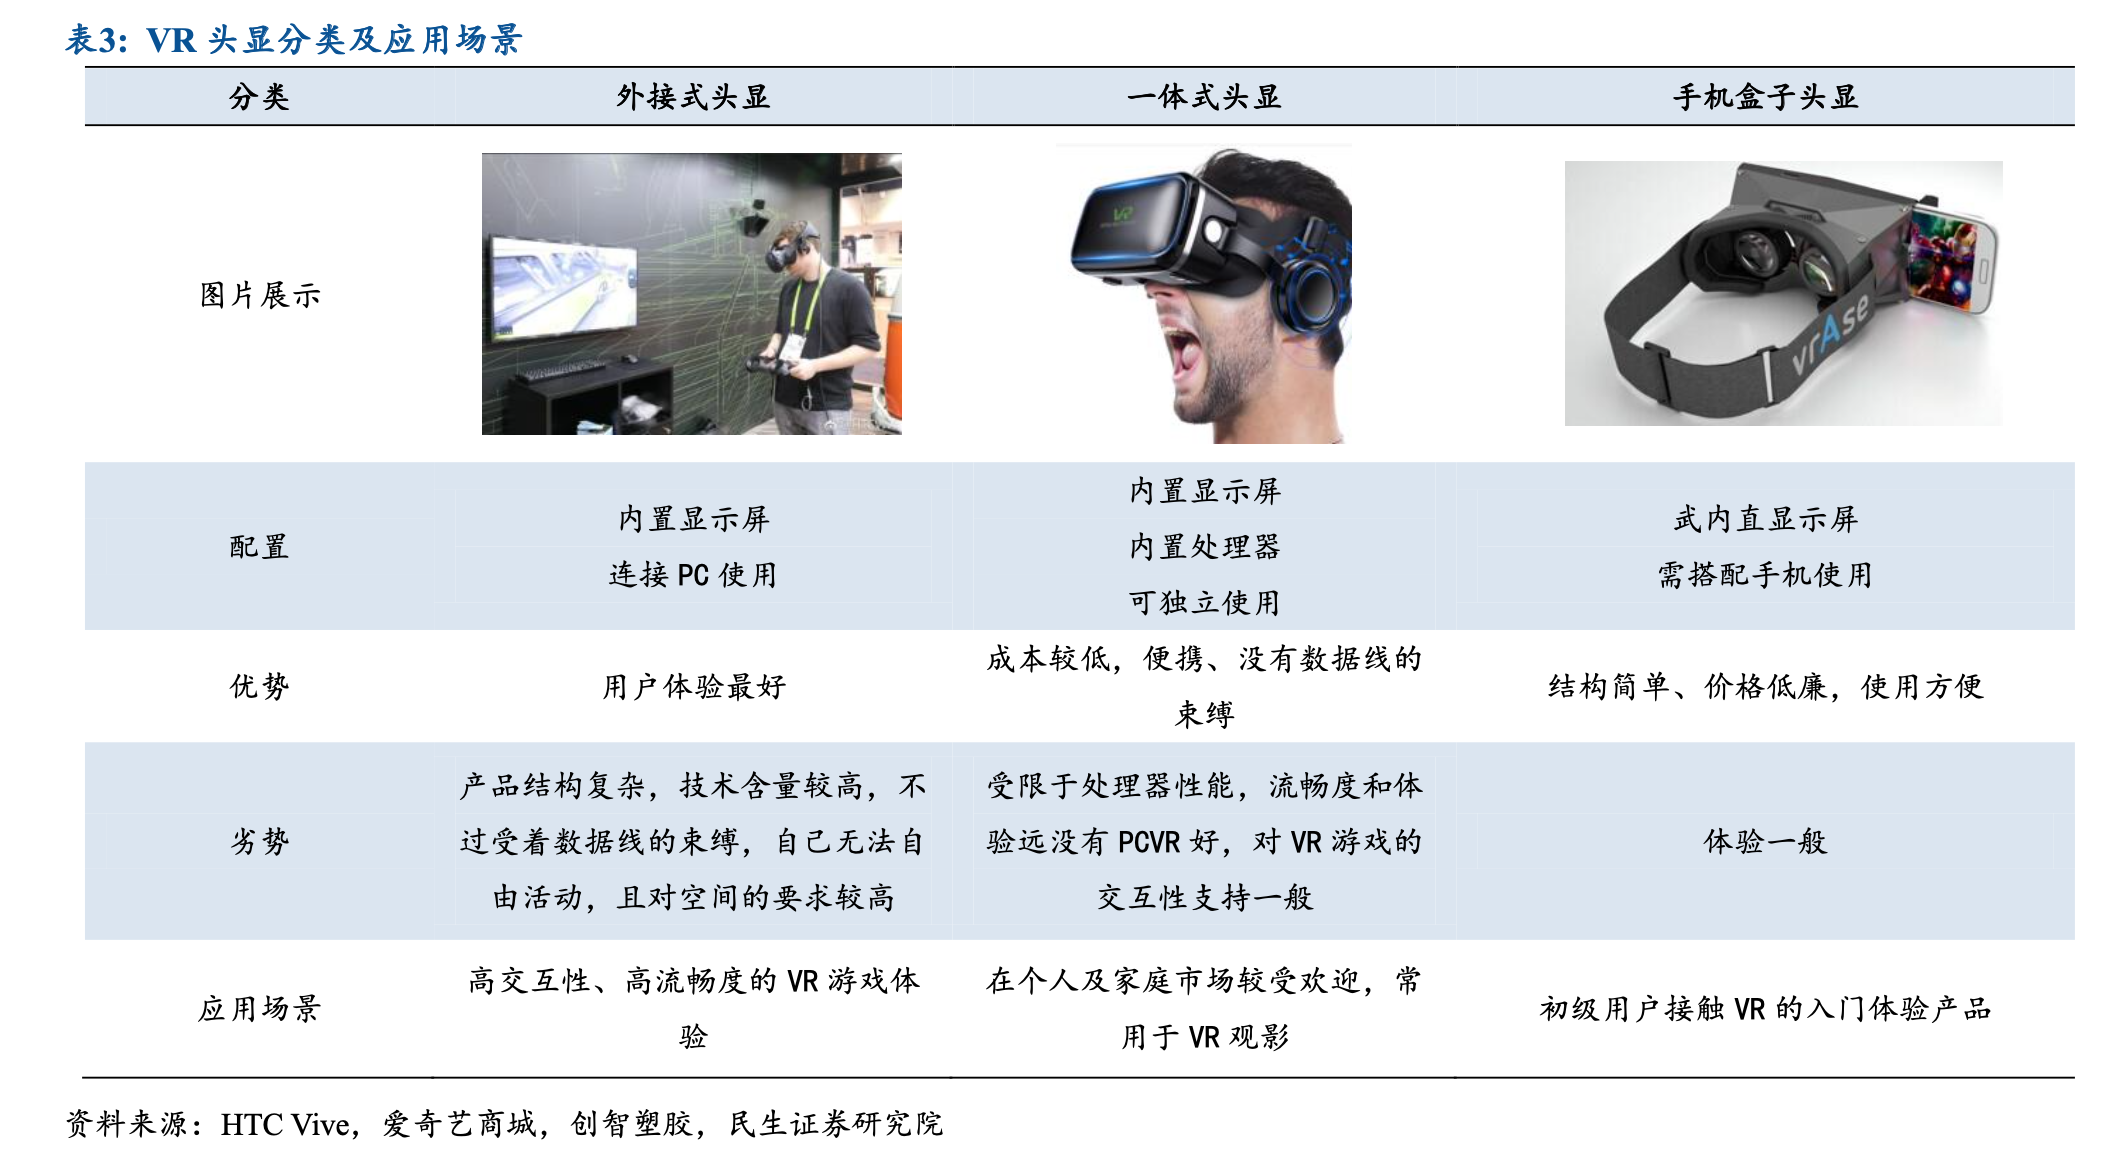 VR頭顯設備分類 VR頭顯品牌簡單評測排行